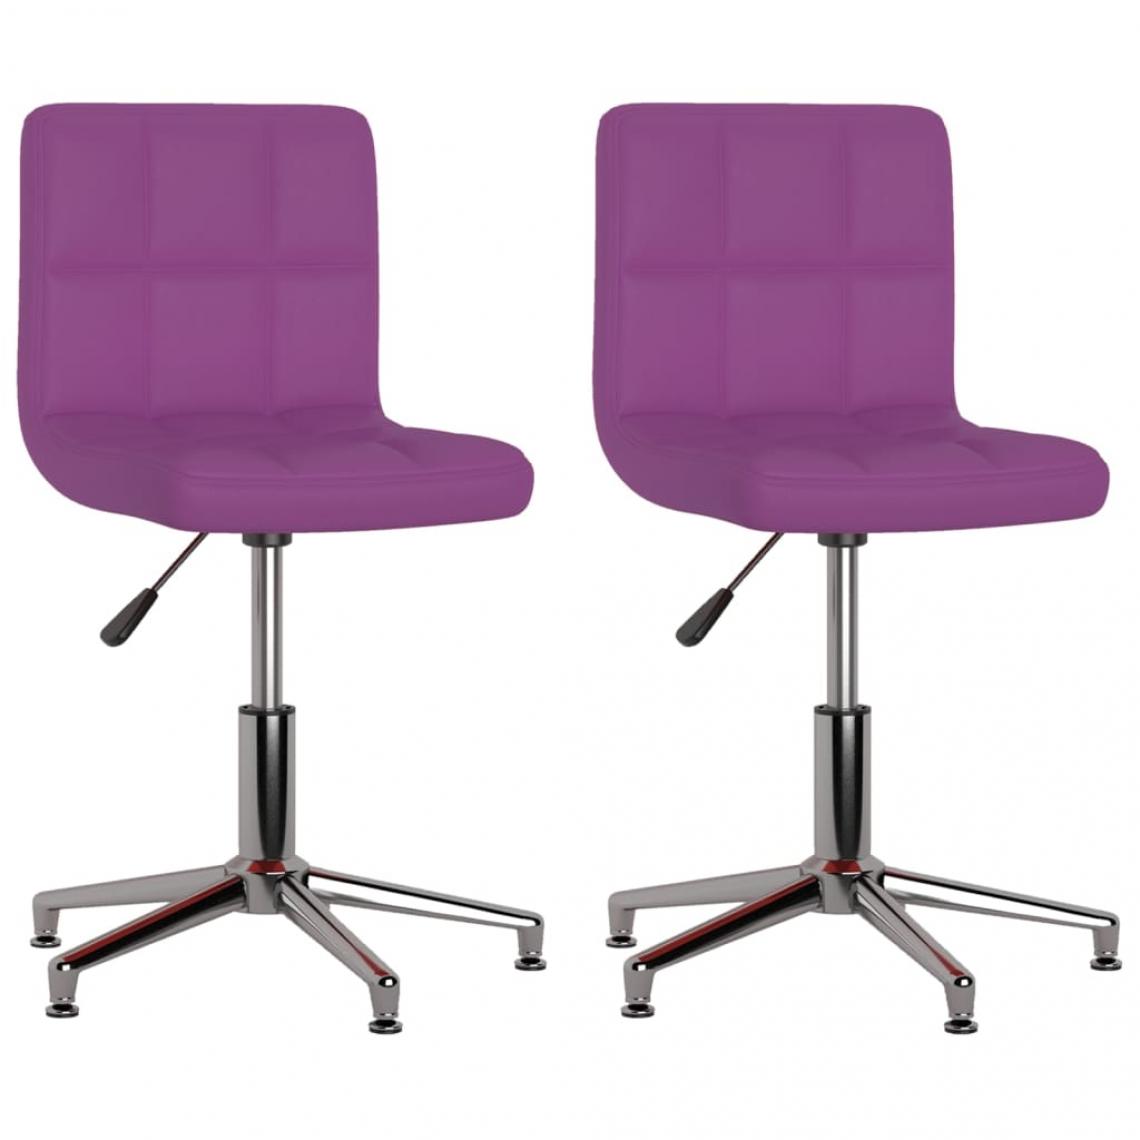 Decoshop26 - Lot de 2 chaises de salle à manger cuisine pivotantes design moderne similicuir violet CDS020946 - Chaises